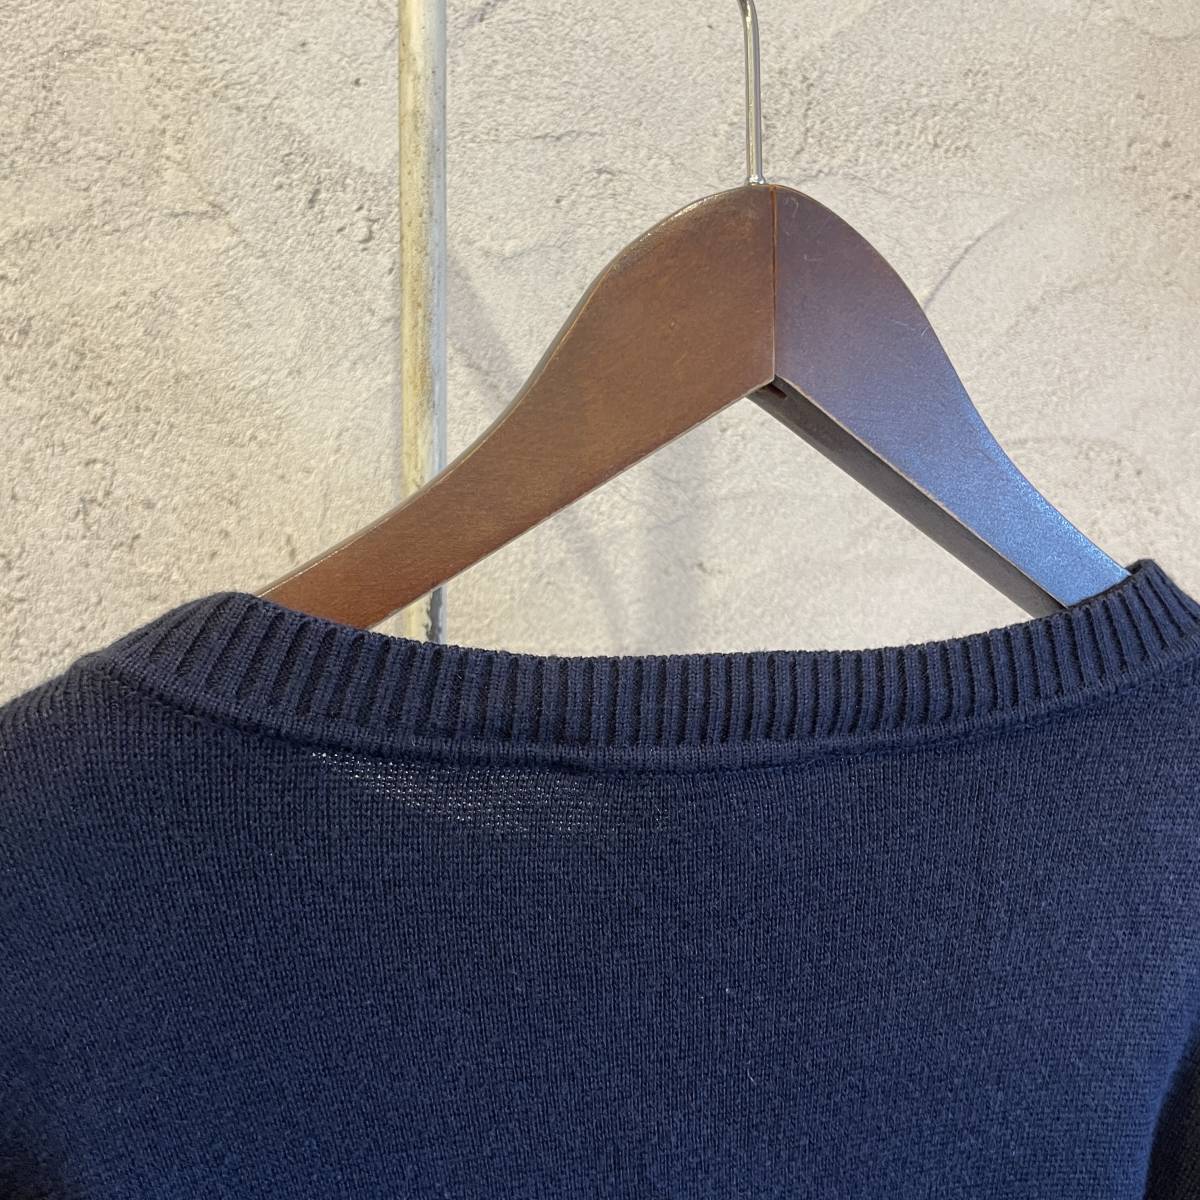 Salvatore Ferragamo サルバトーレフェラガモ メンズ ニット セーター イタリア製_画像8